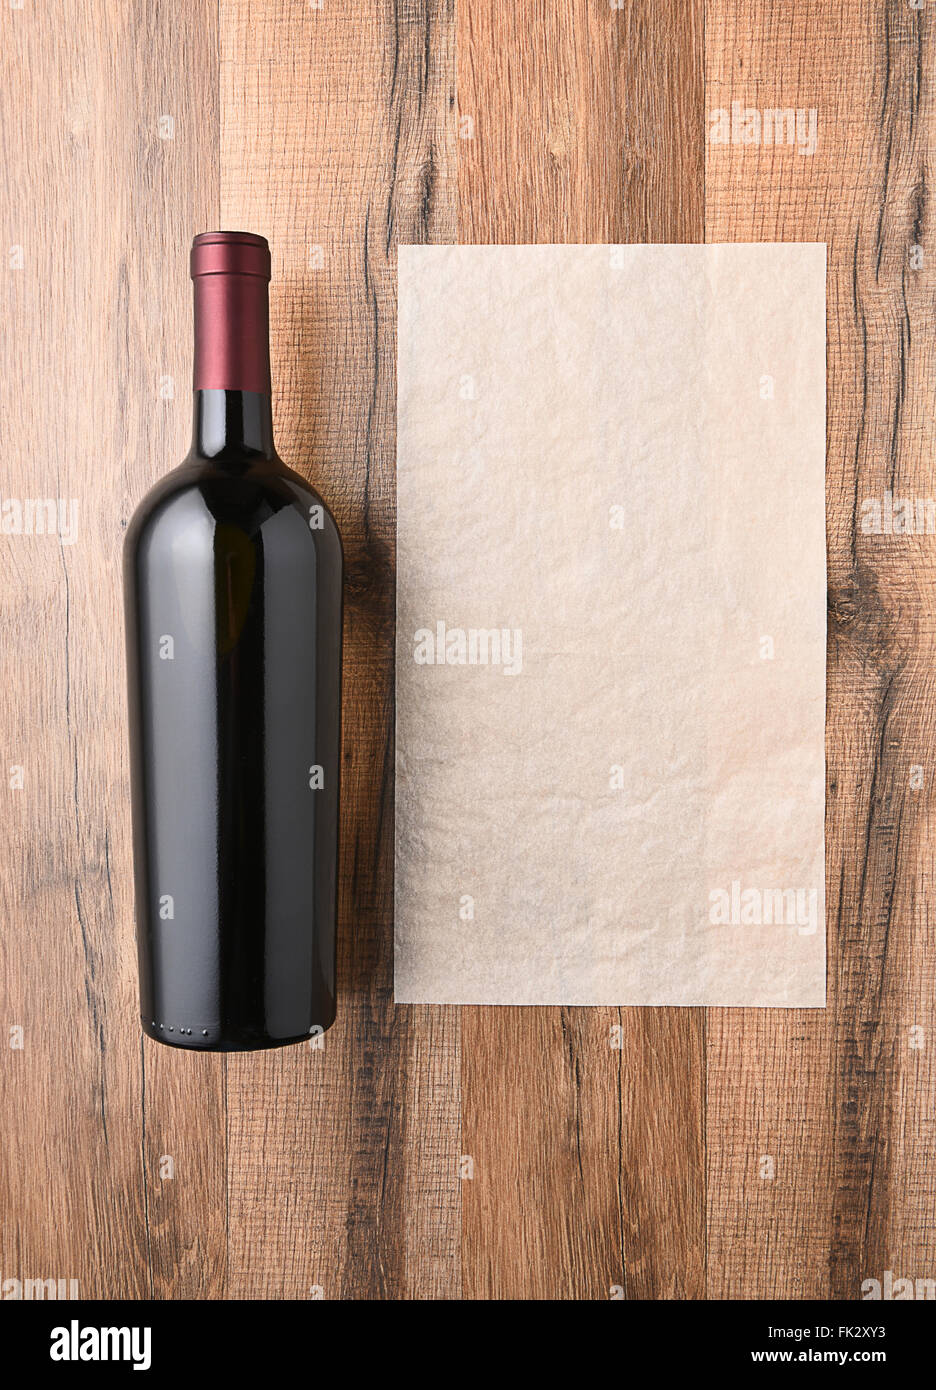 Vue de dessus d'une bouteille de vin à côté d'une feuille de papier vierge. Liste des vins concept. Banque D'Images